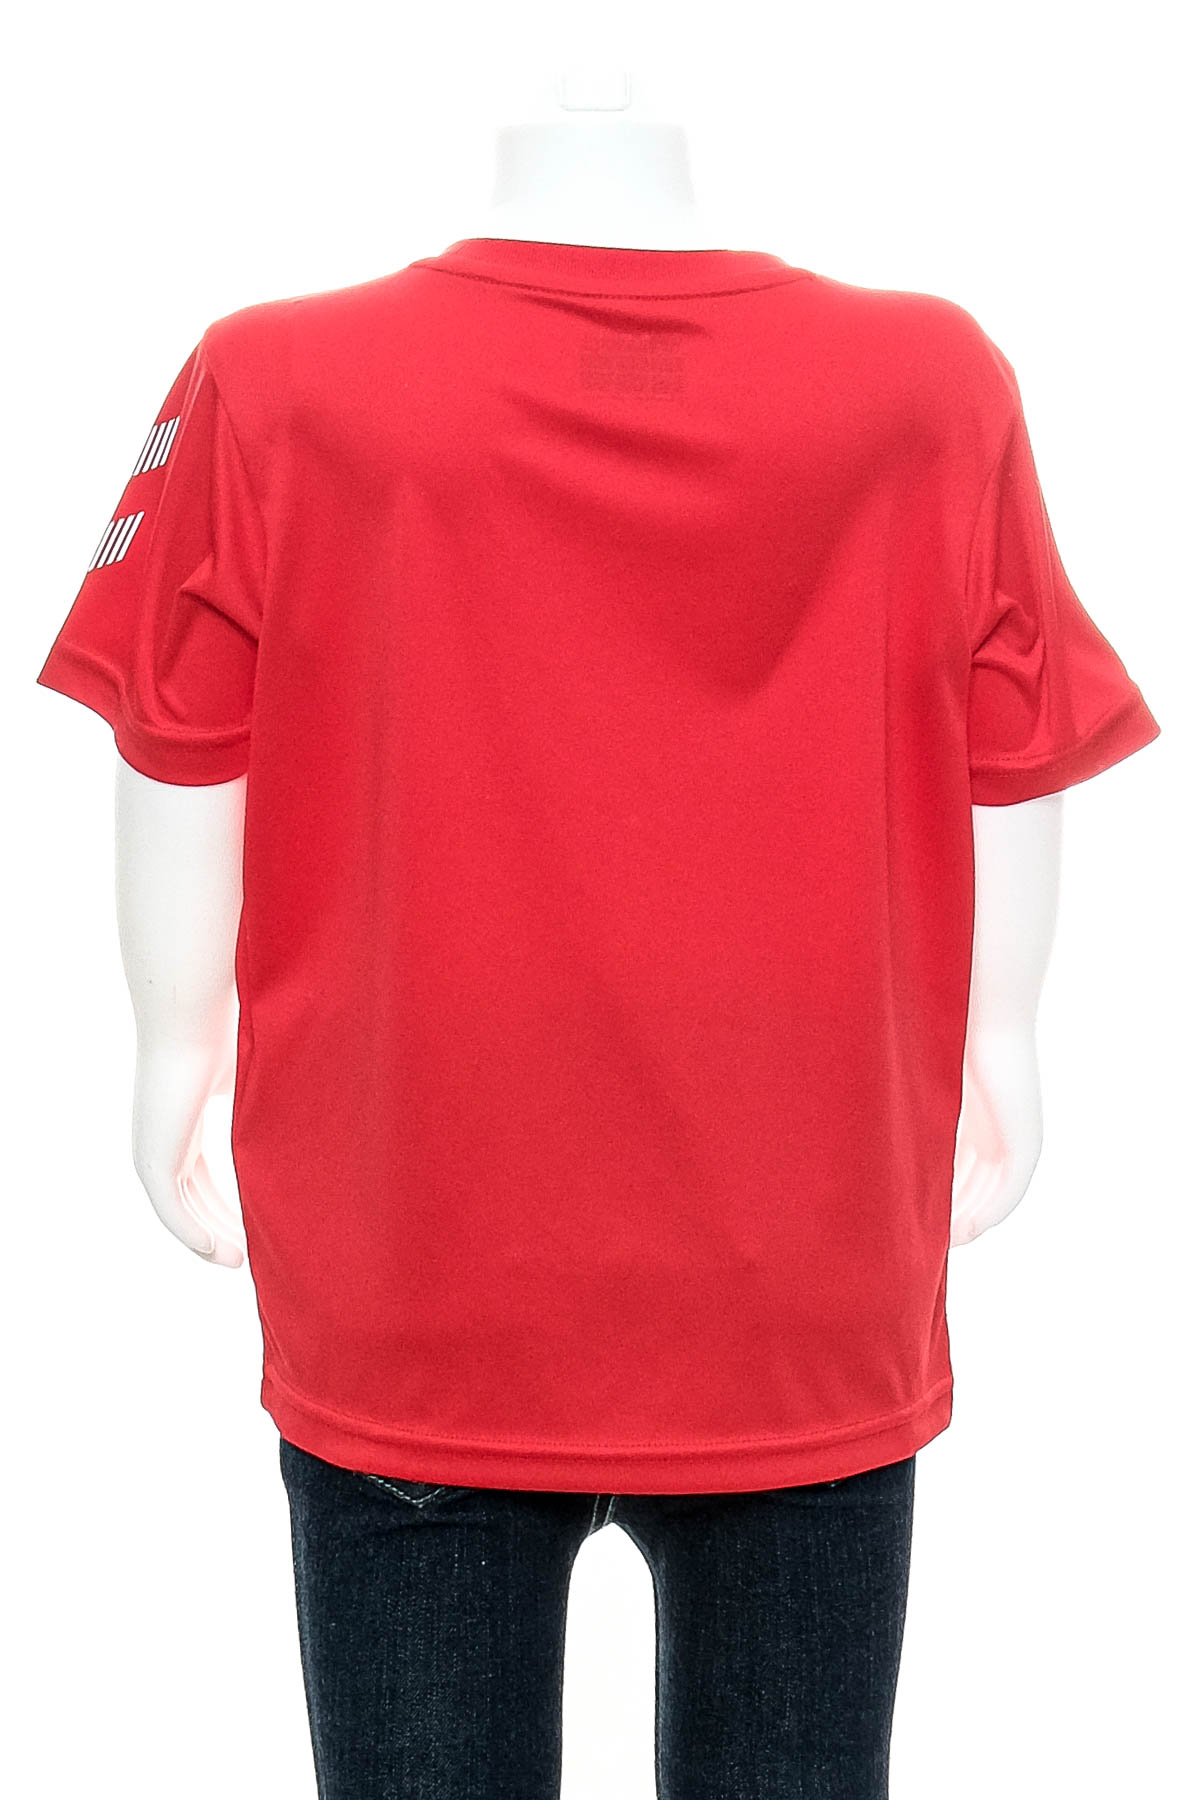 Тениска за момче - Hummel - 1